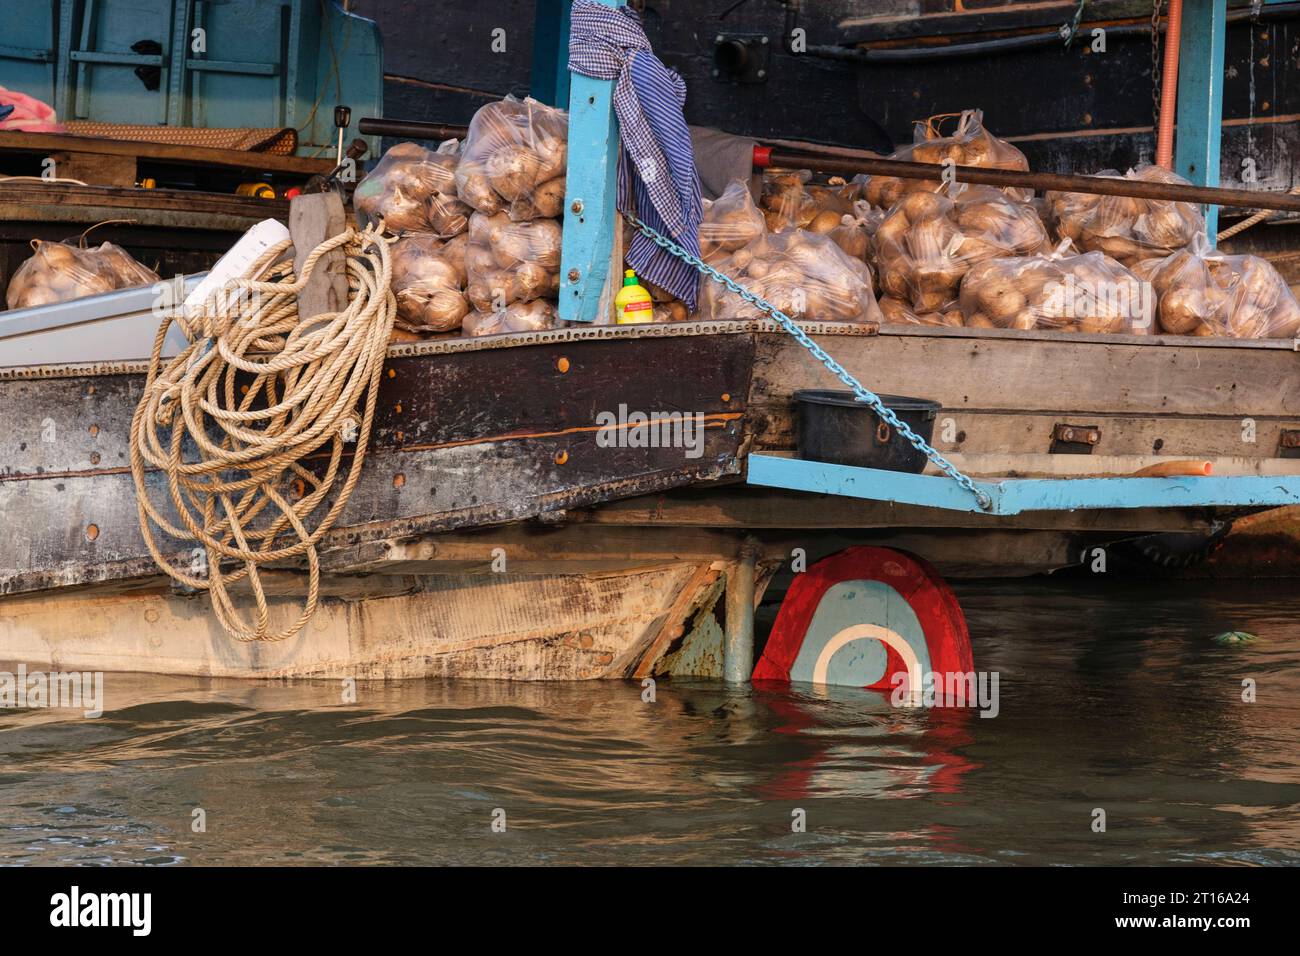 Scène du marché flottant de Phong Dien, près de CAN Tho, Vietnam. Bateau chargé de produits. Banque D'Images